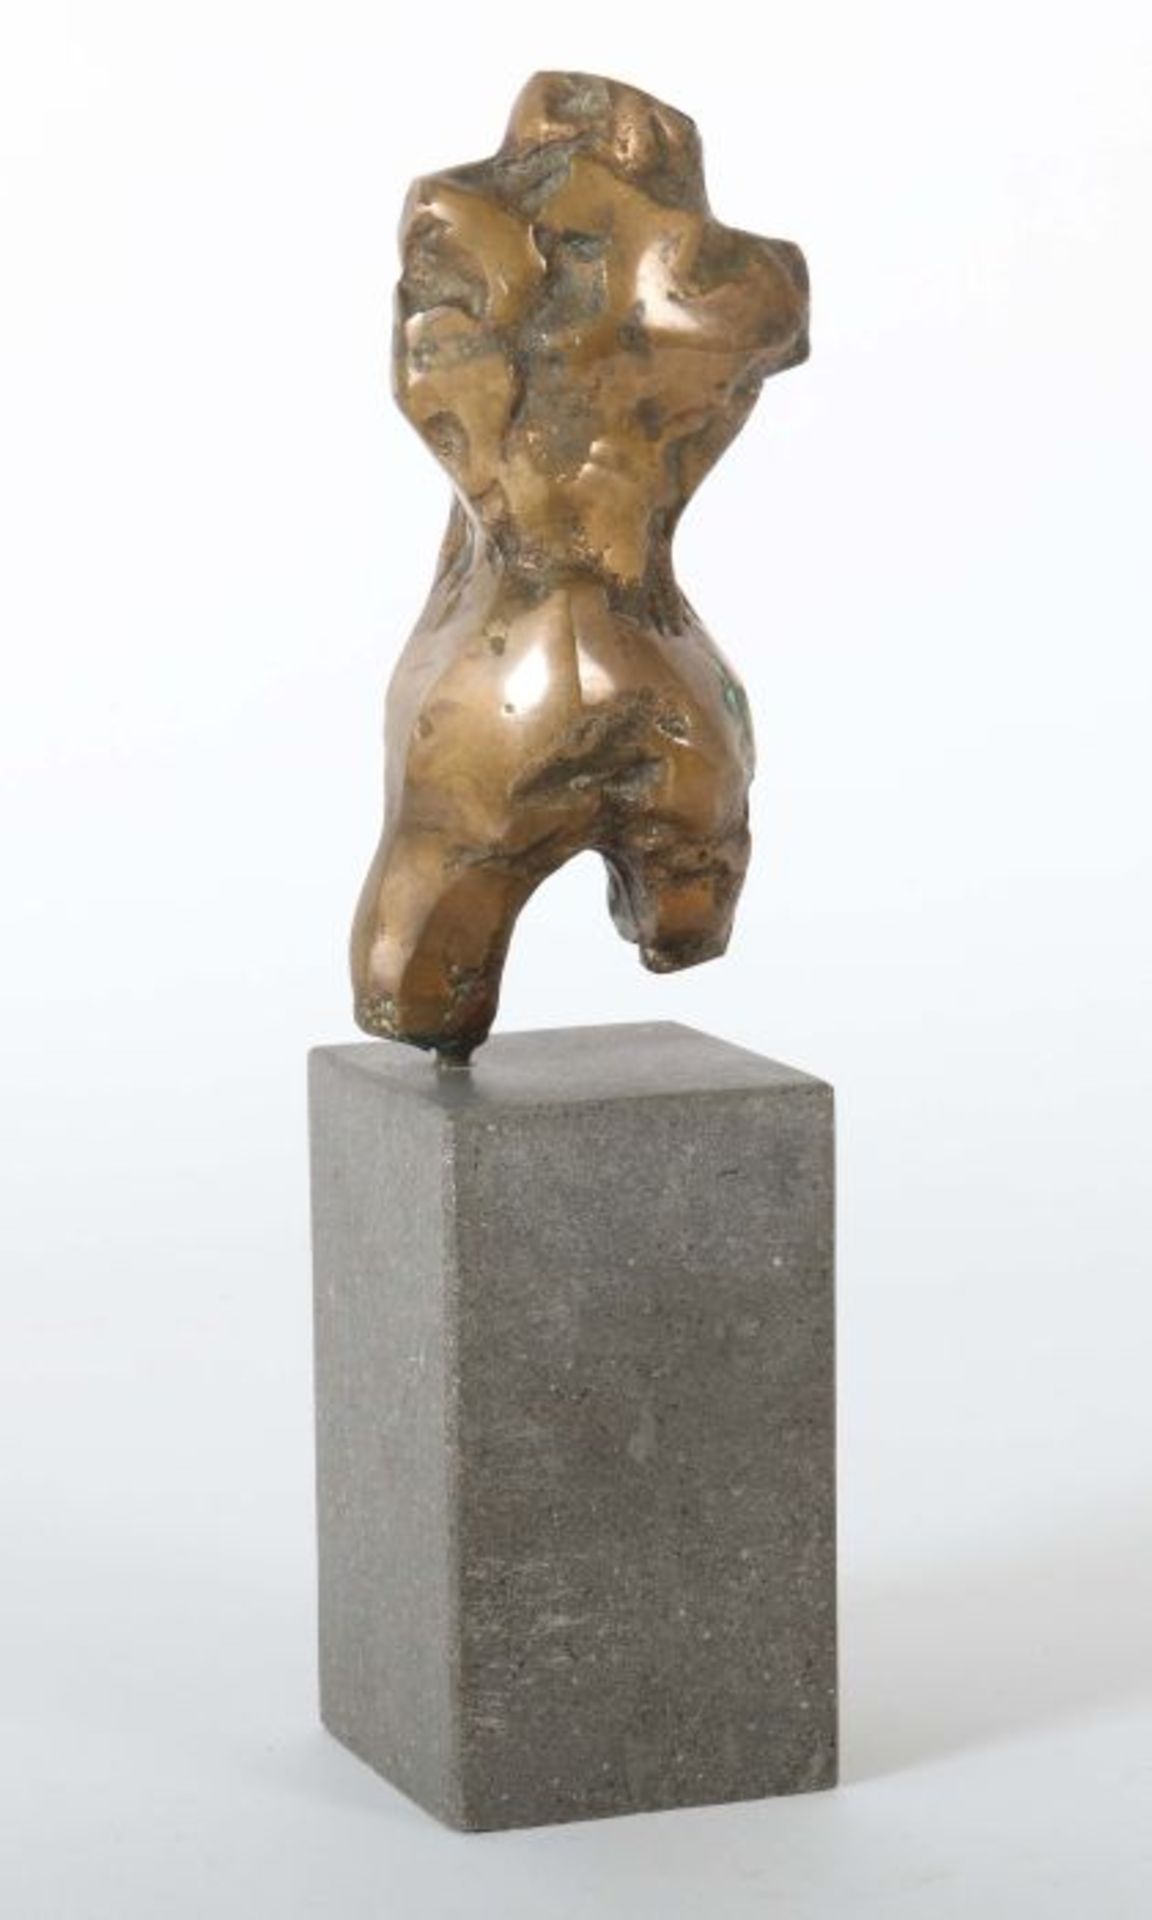 Friboulet, Jef Fécamp 1919 - 2003 Yport, Grafiker, Maler und Bildhauer. "Weiblicher Torso", Bronze, - Bild 2 aus 2